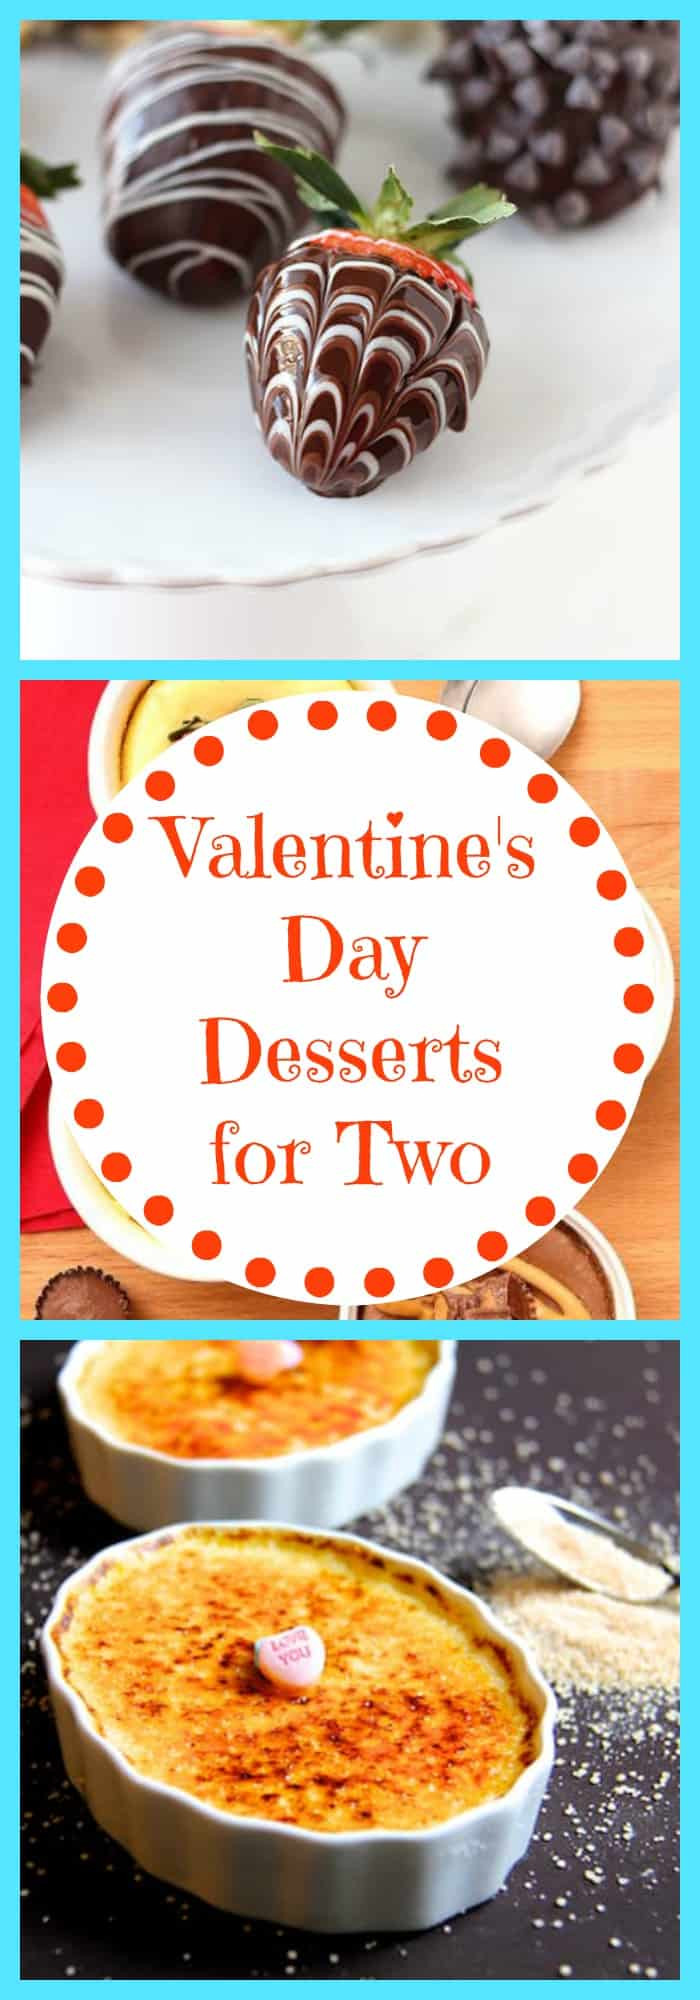 Valentine'S Day Desserts For Two
 Valentine s Day Desserts for Two The Organized Mom